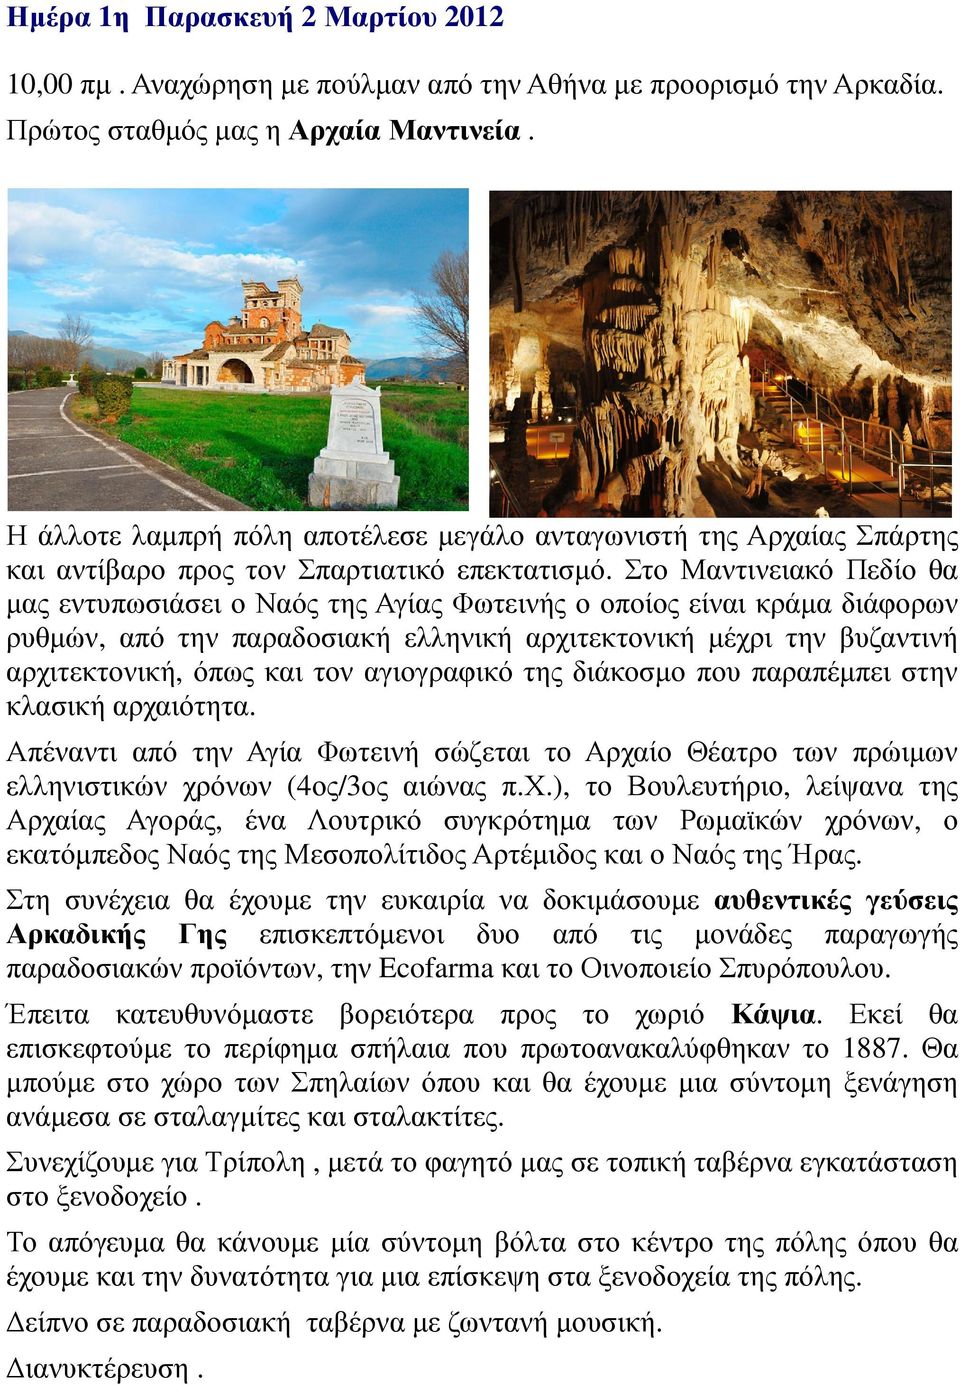 Στο Μαντινειακό Πεδίο θα µας εντυπωσιάσει ο Ναός της Αγίας Φωτεινής ο οποίος είναι κράµα διάφορων ρυθµών, από την παραδοσιακή ελληνική αρχιτεκτονική µέχρι την βυζαντινή αρχιτεκτονική, όπως και τον